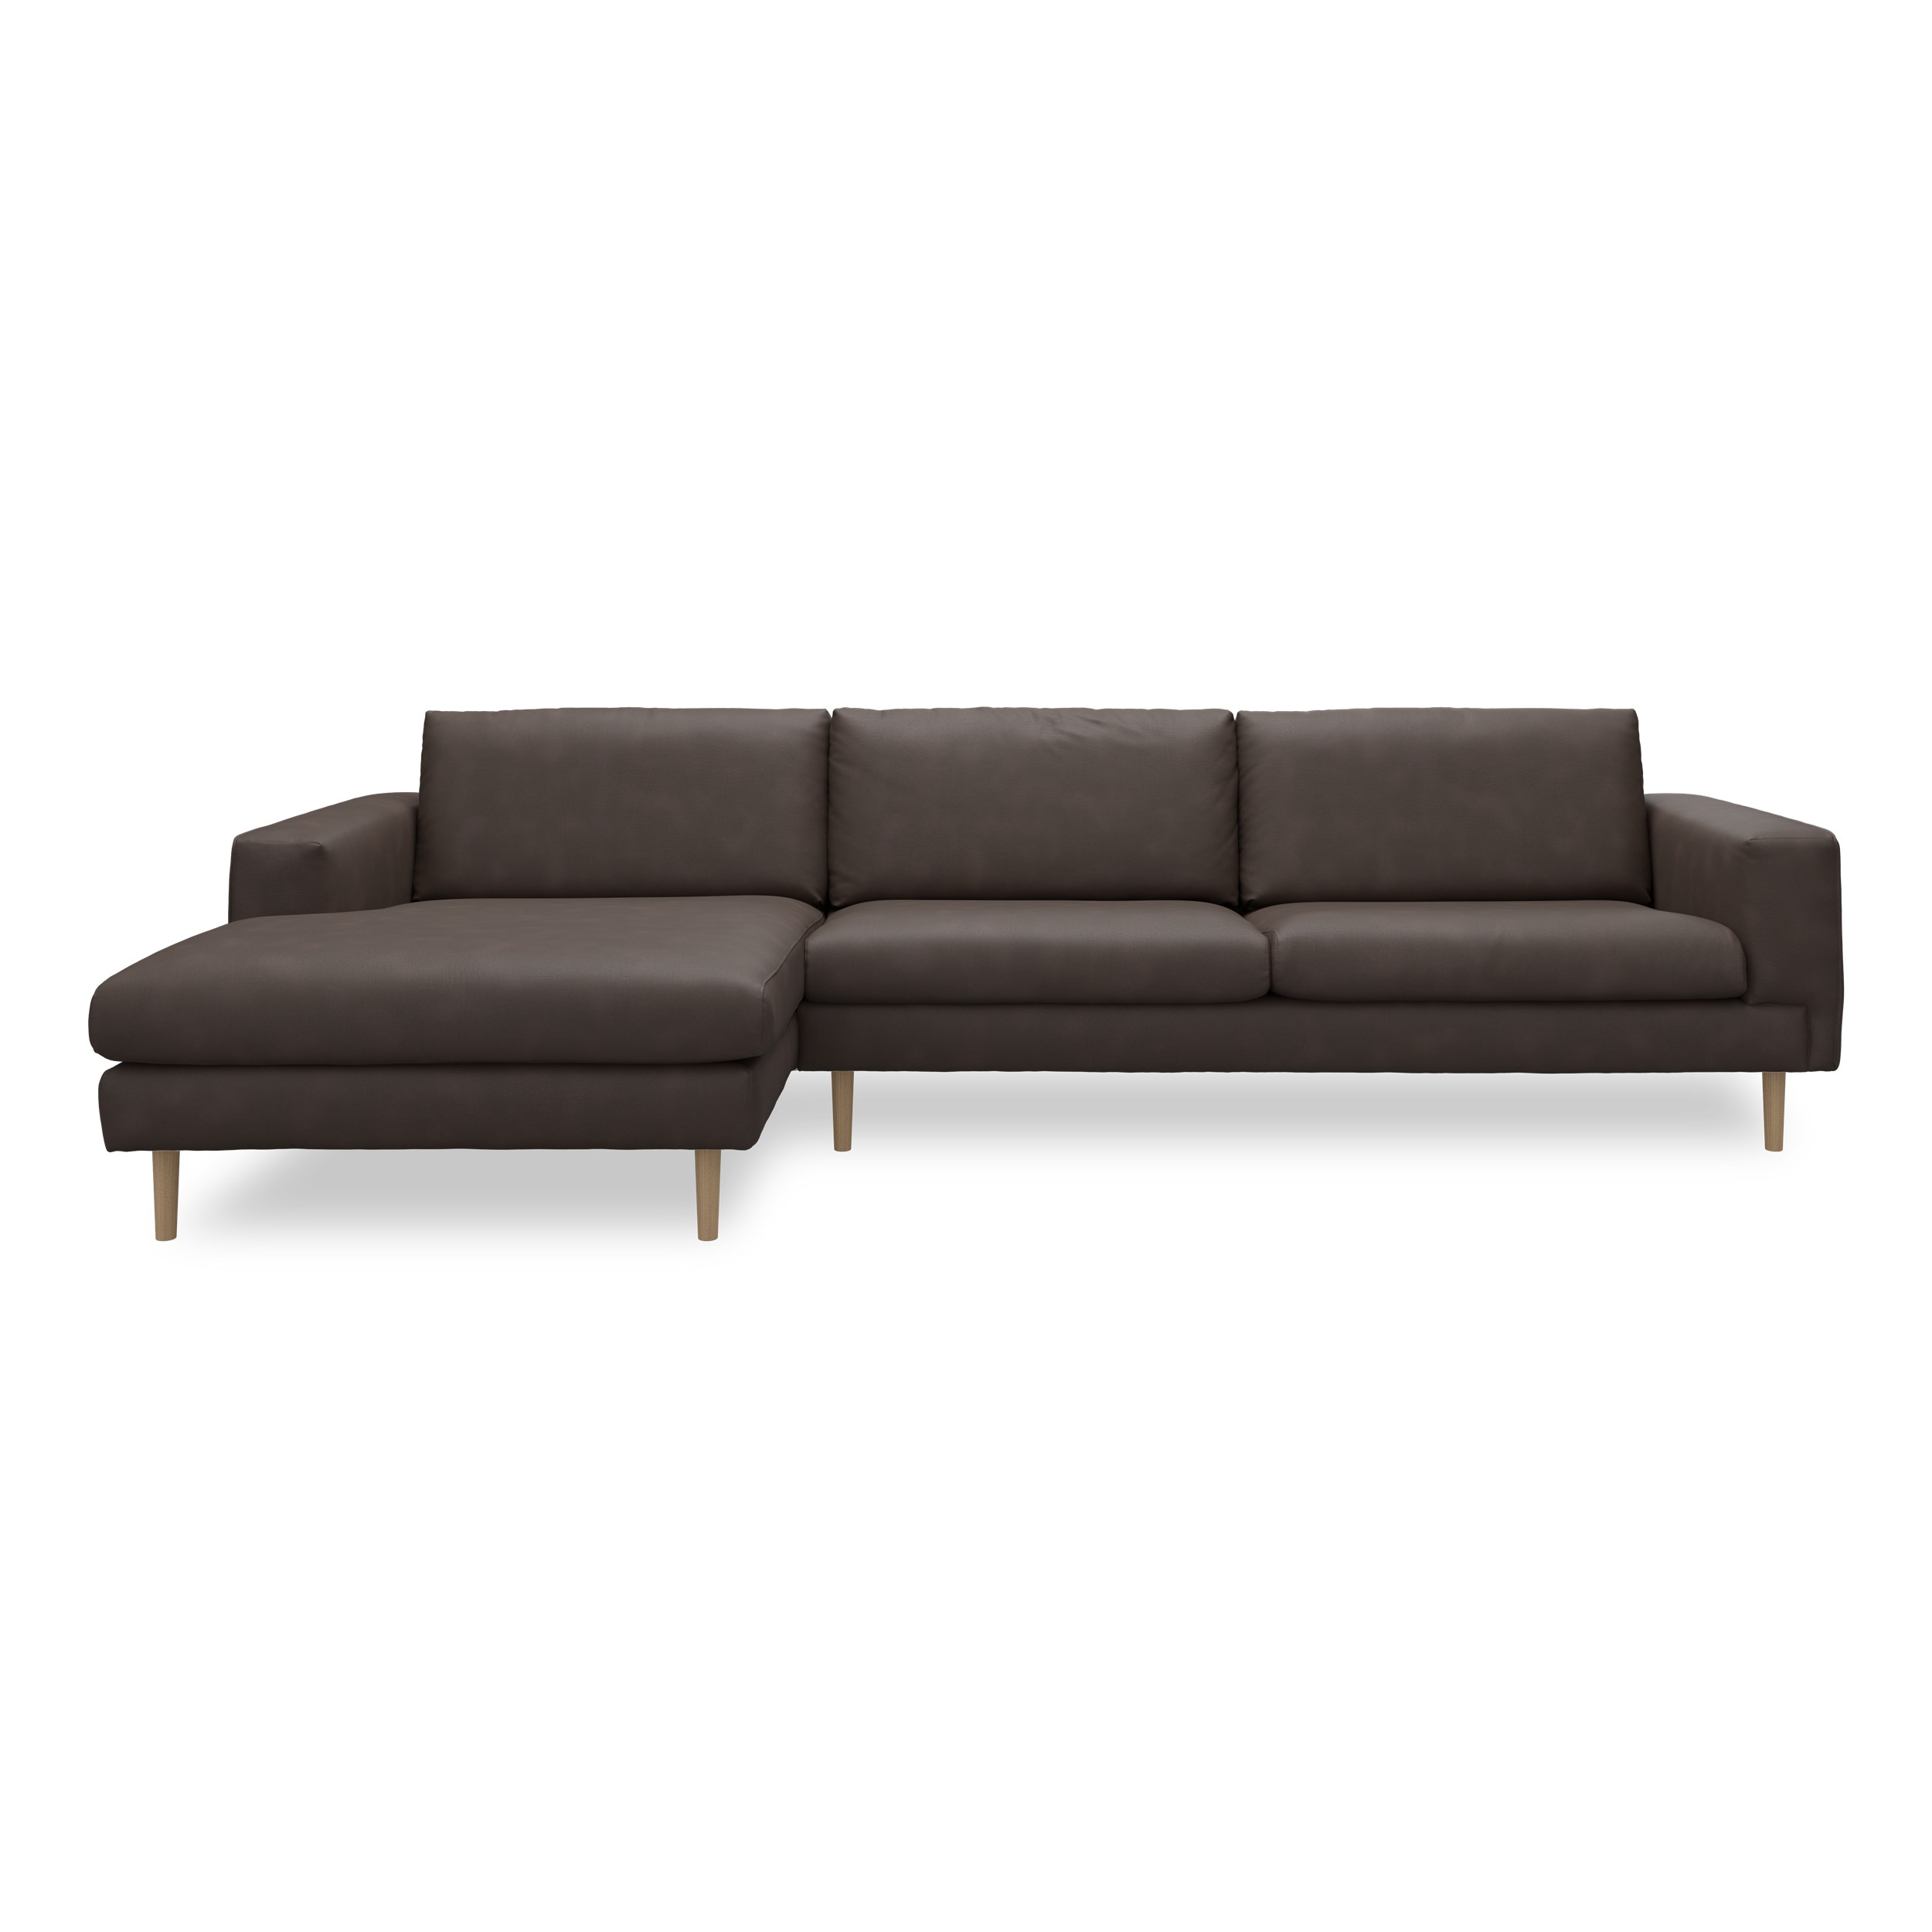 Nyland venstrevendt sofa med chaiselong - Kentucky 1 earth bonded læder, Ben no. 141 i lakeret massiv eg og S: Pocketfjedre/koldskum R: Koldskum med fiberfyld